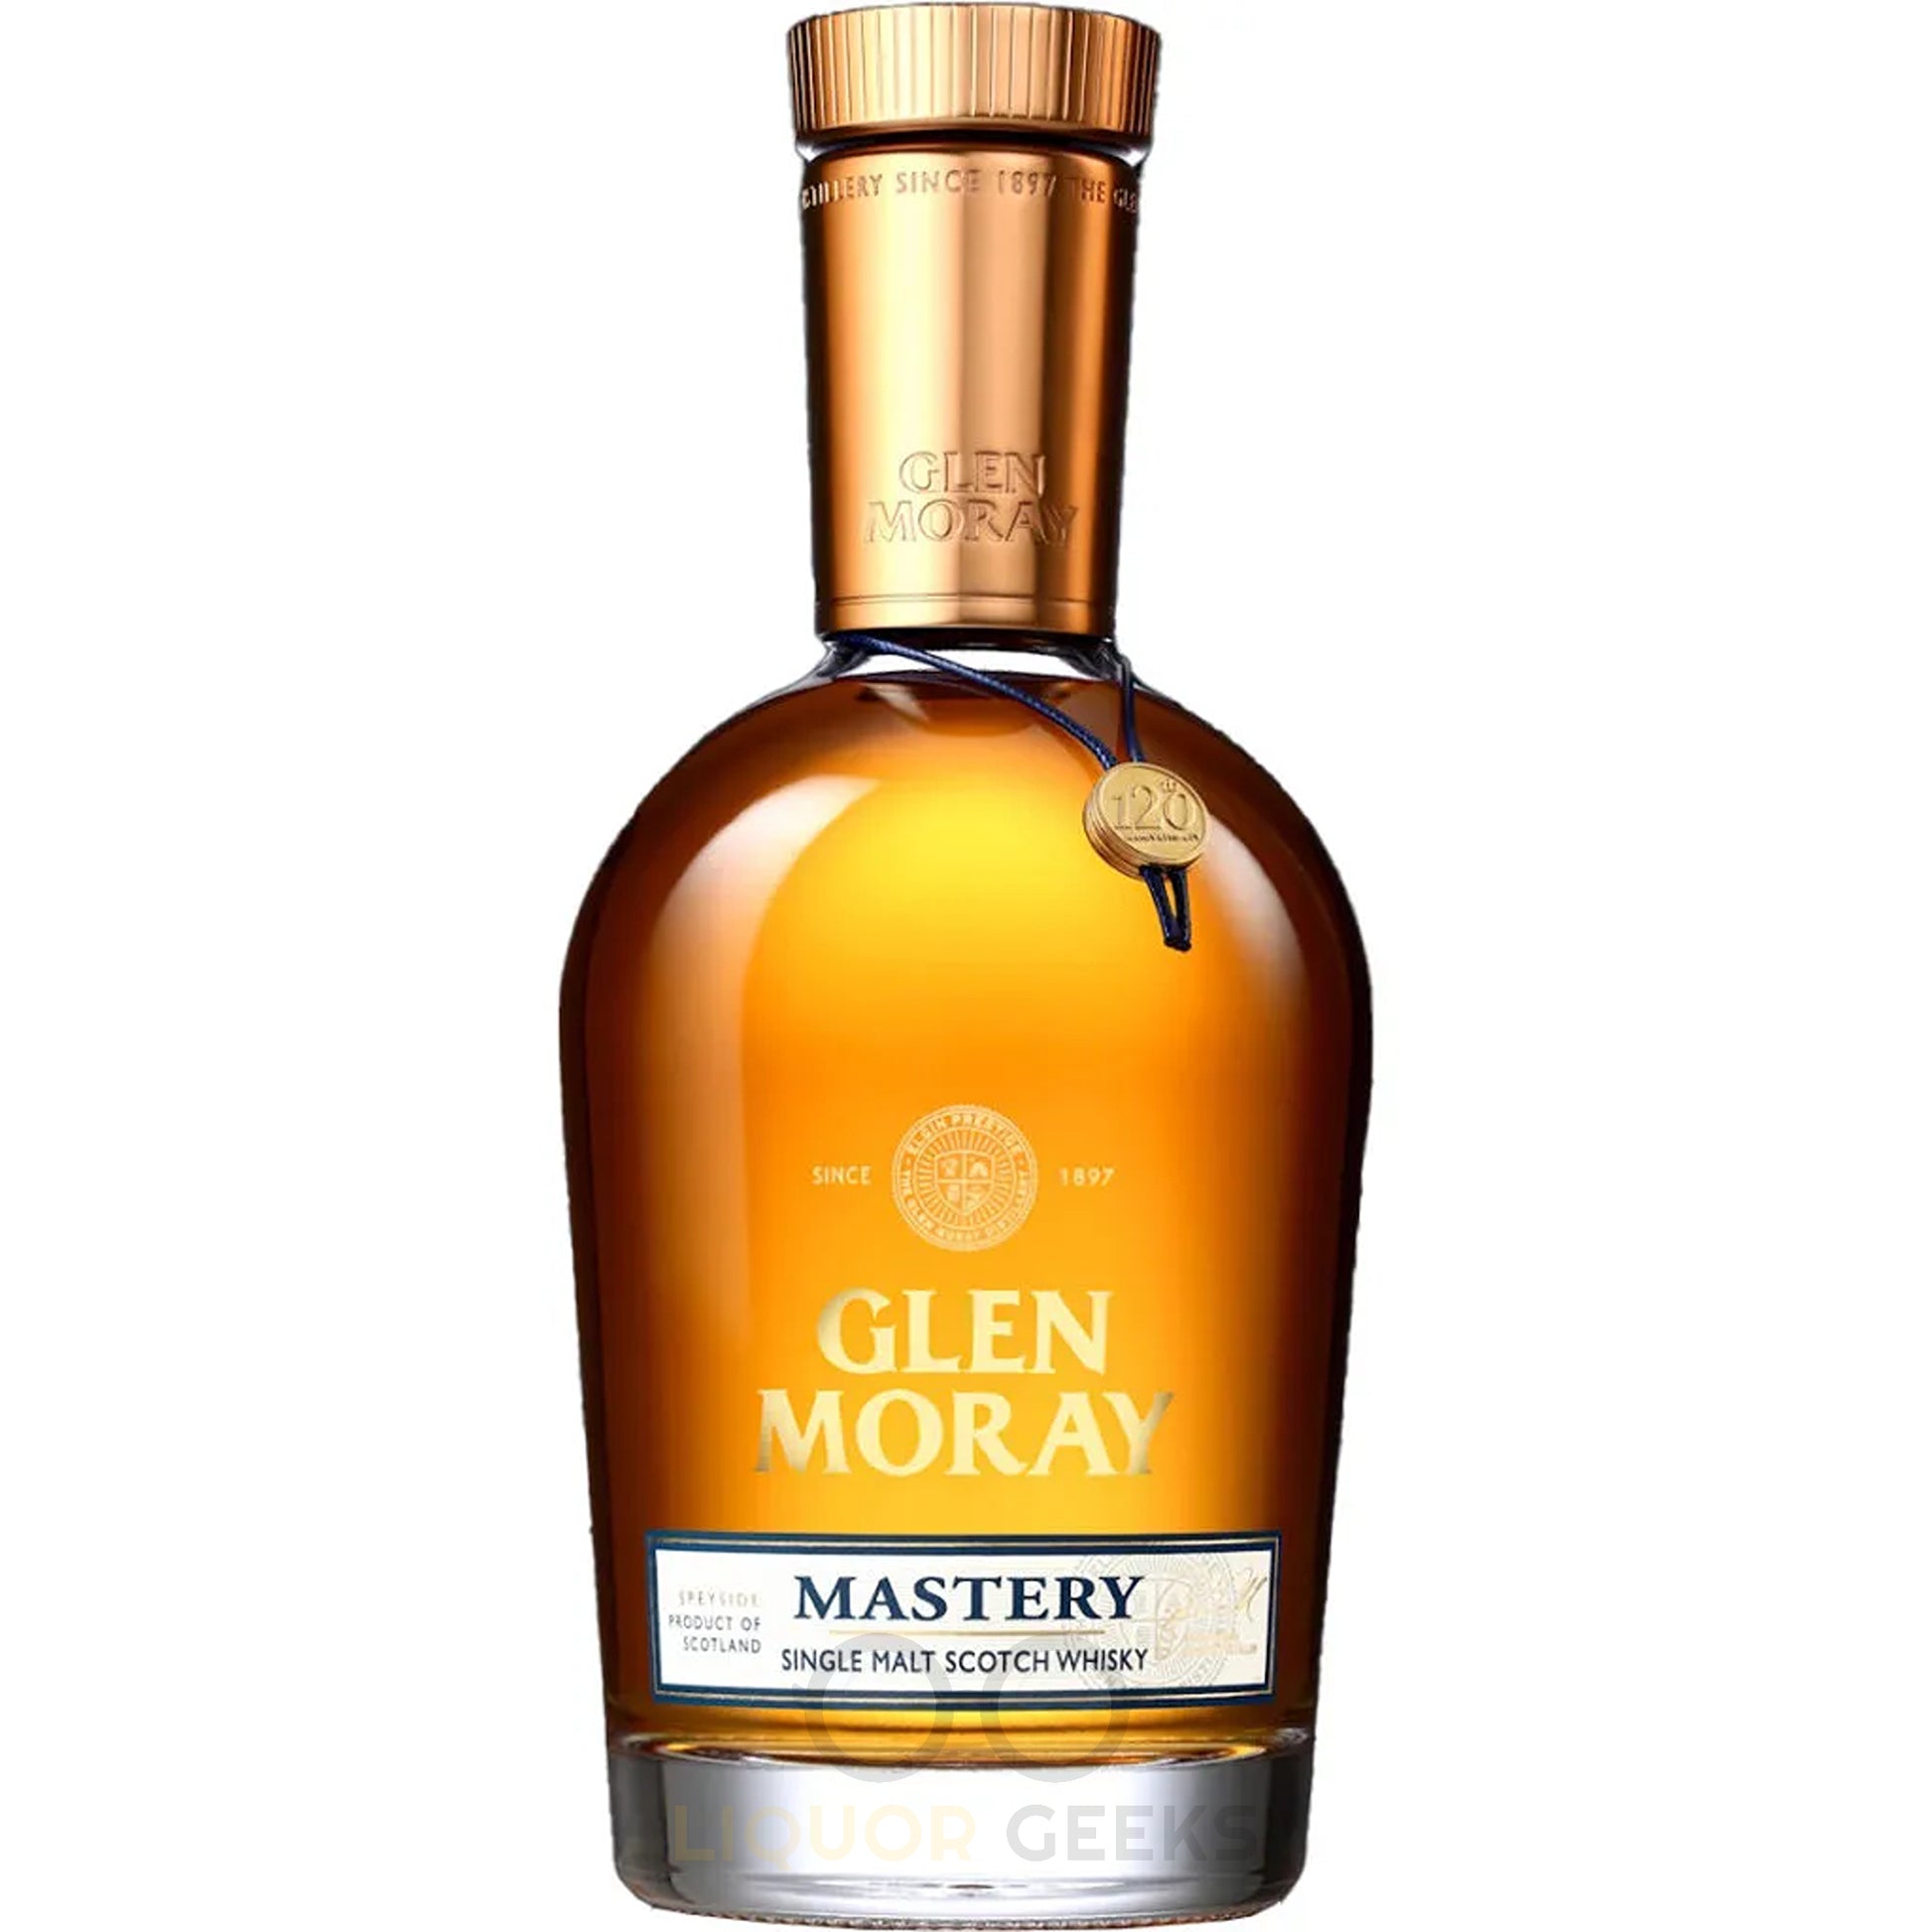 Glen Moray Mastery Single Malt Scotch Whisky - L Geeks